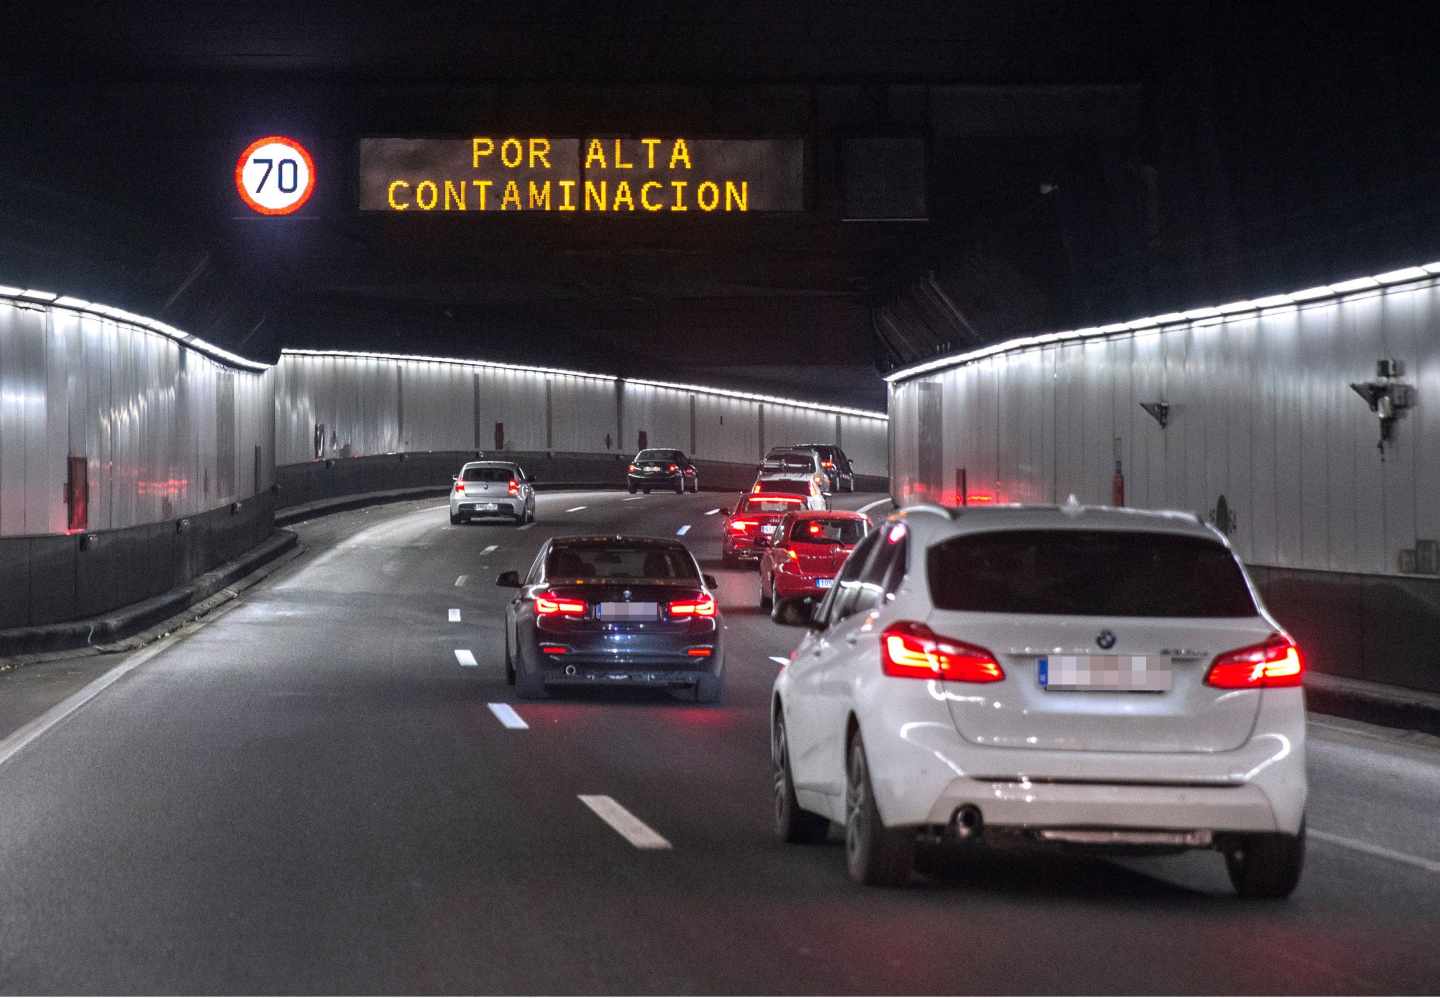 Uno de los túneles de la M-30 de Madrid, con avisos por la contaminación.